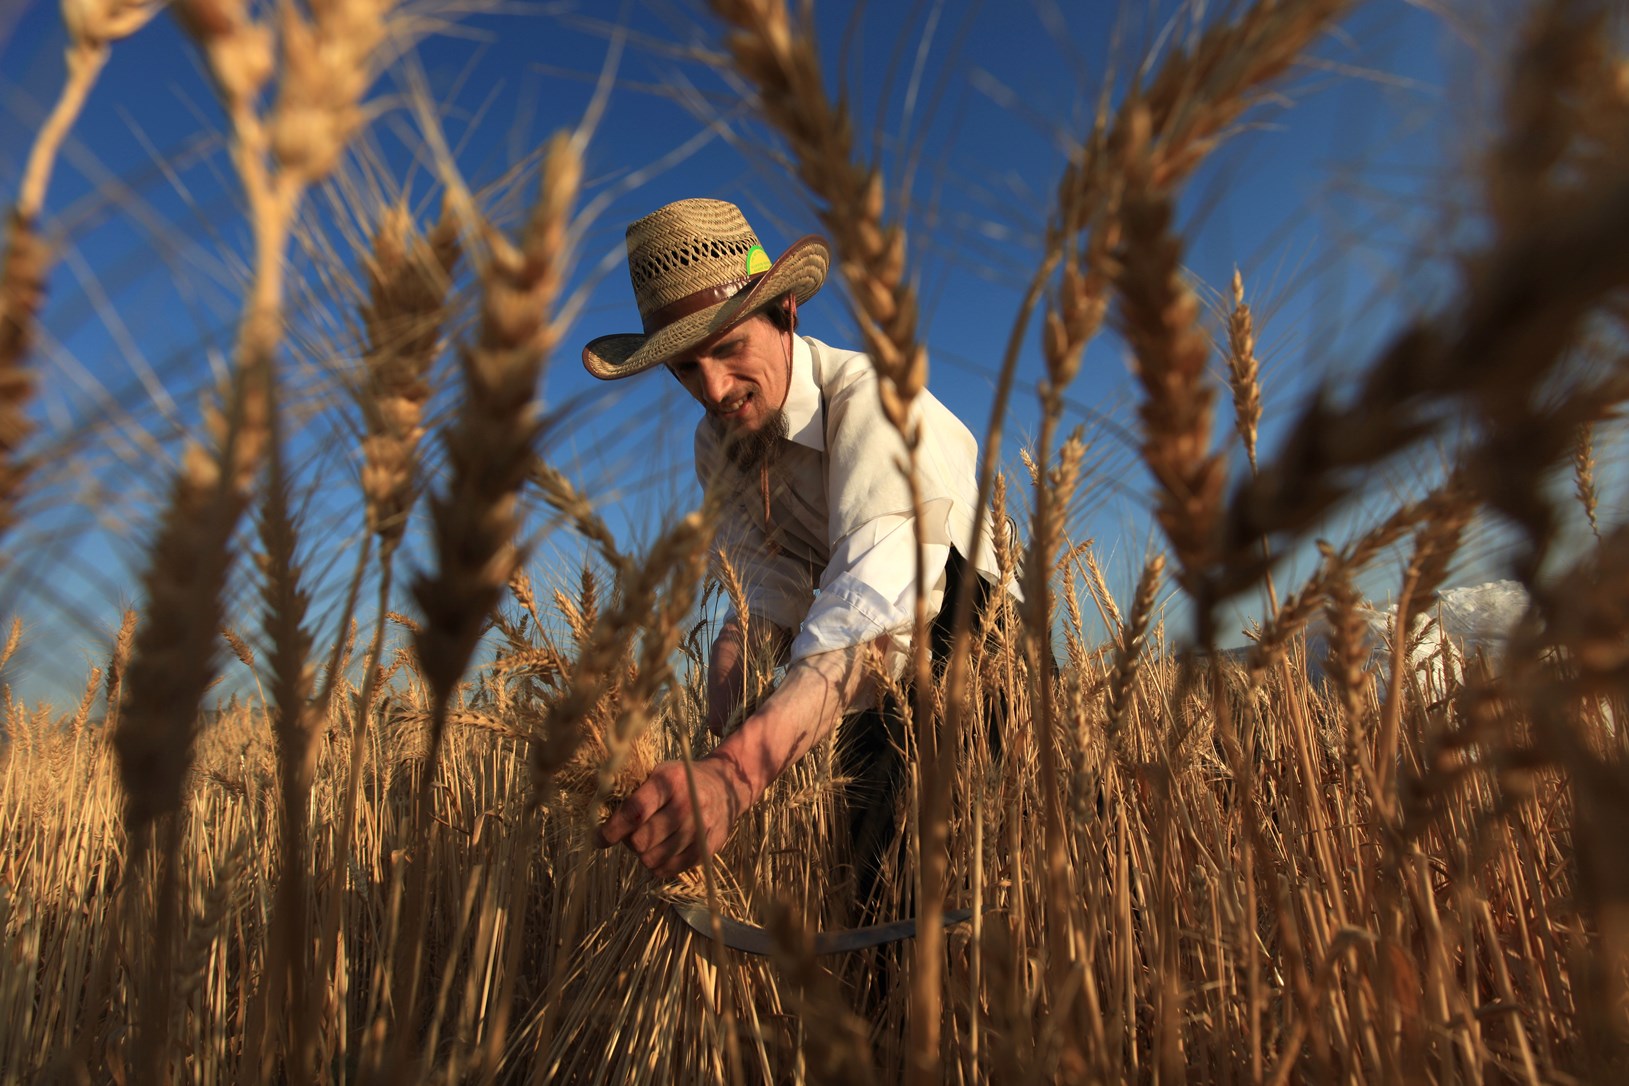 Harvesting wheat in Modi'in. Photo by Nati Shohat/FLASH90